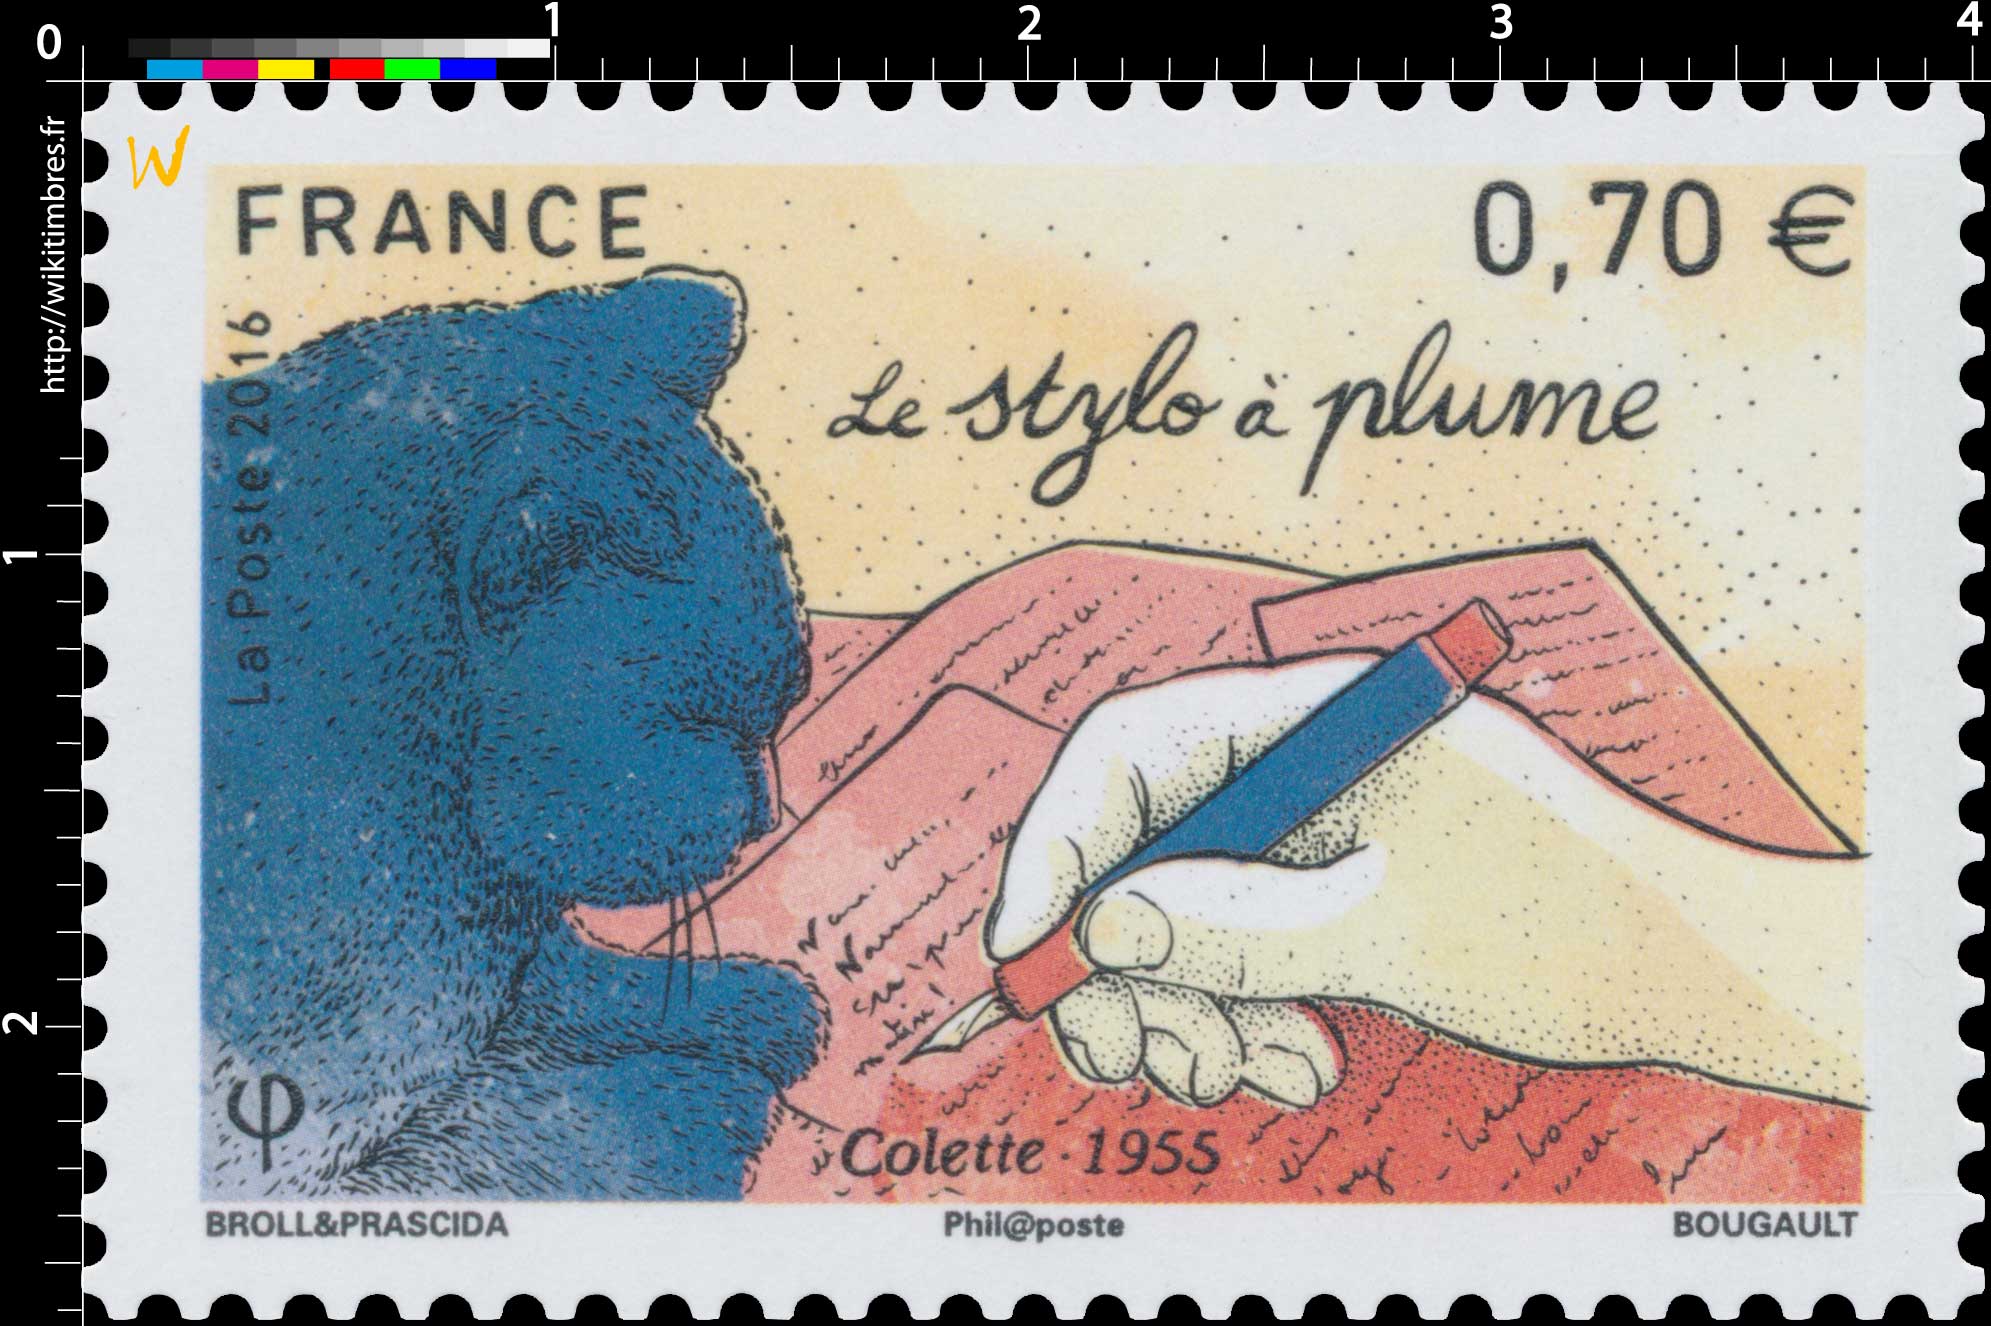 2016 Le stylo à plume - Colette 1955